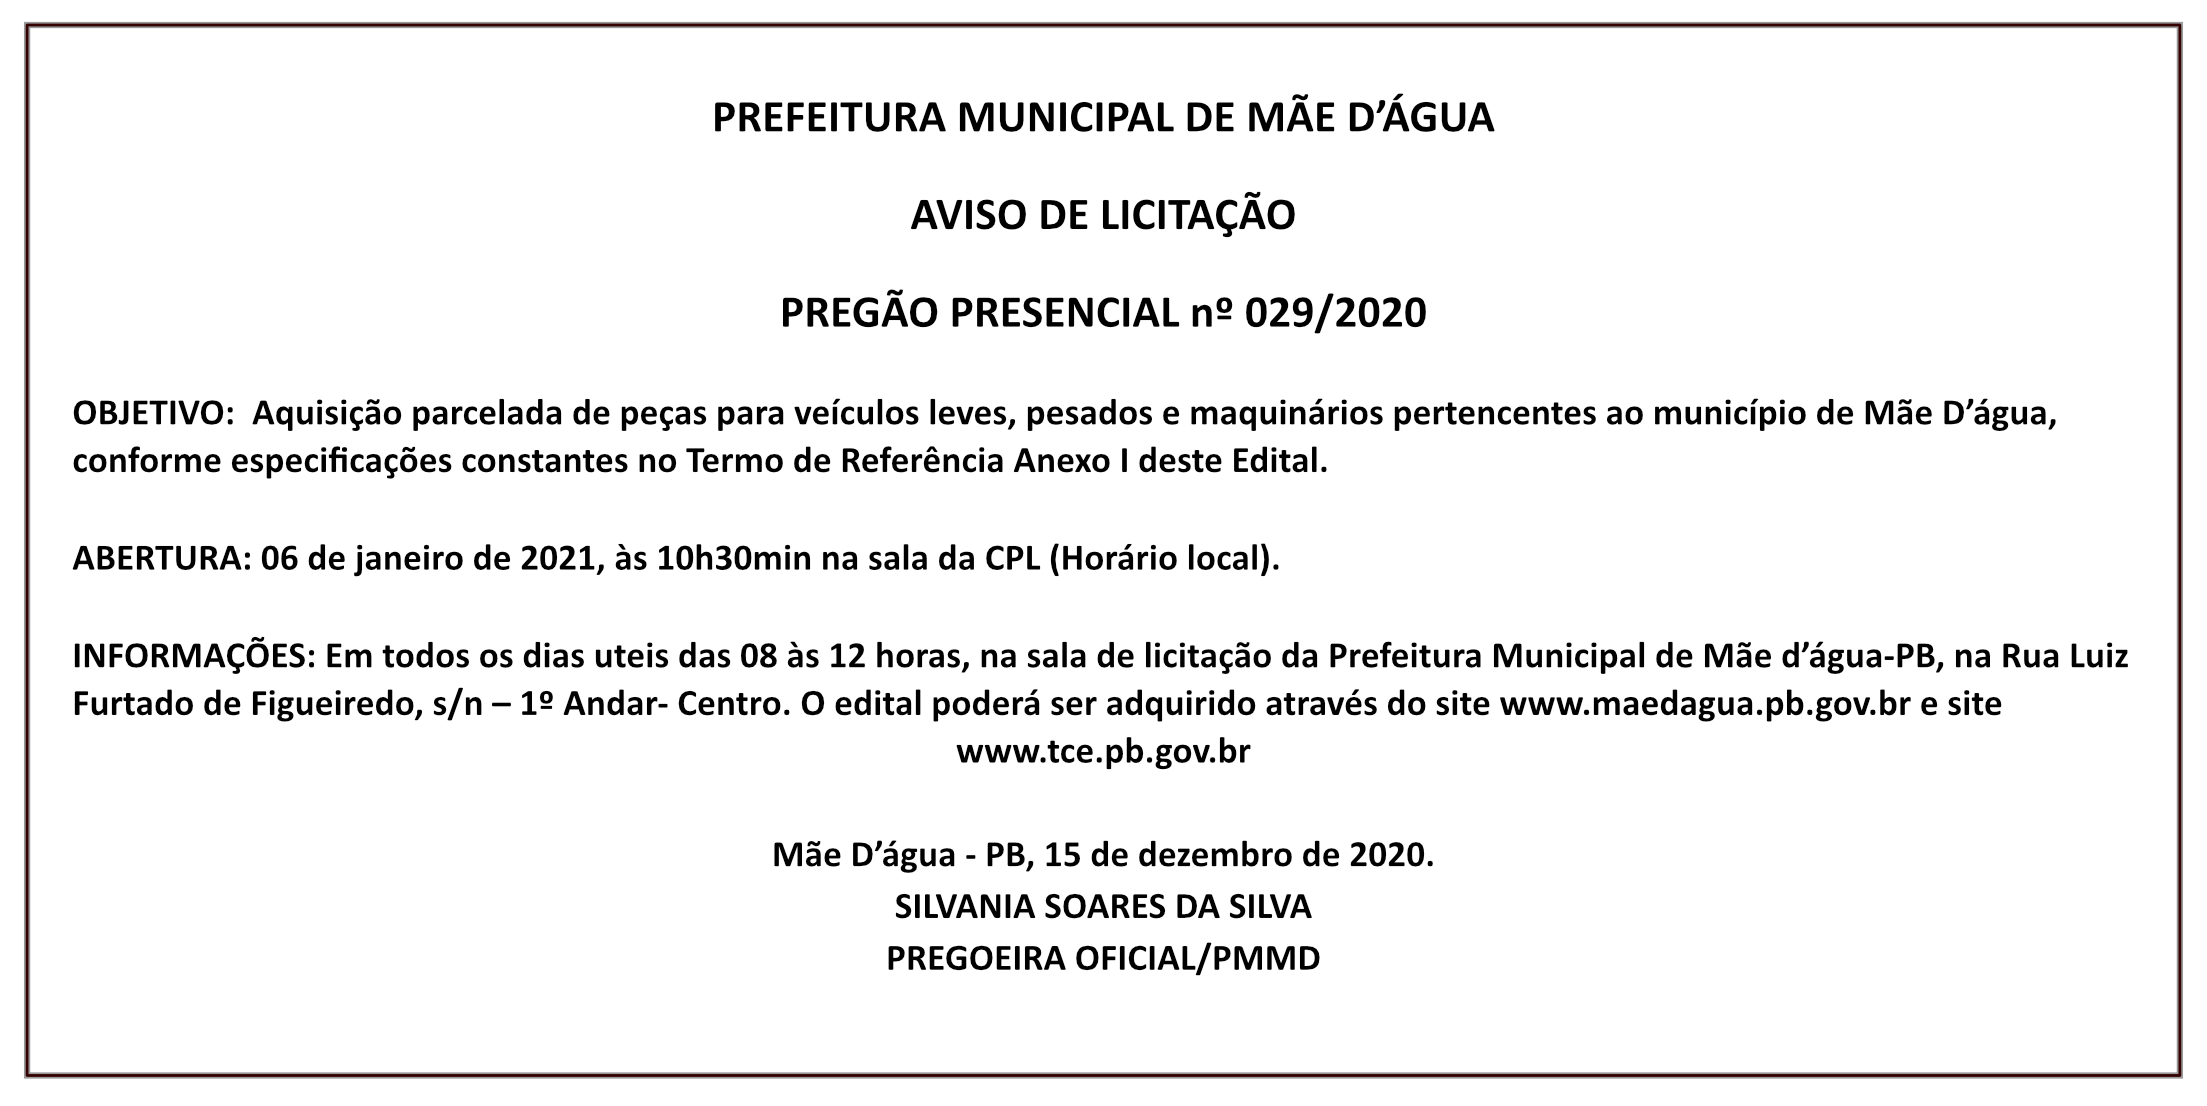 PREFEITURA MUNICIPAL DE MÃE D’ÁGUA – AVISO DE LICITAÇÃO – PREGÃO PRESENCIAL Nº 029/2020